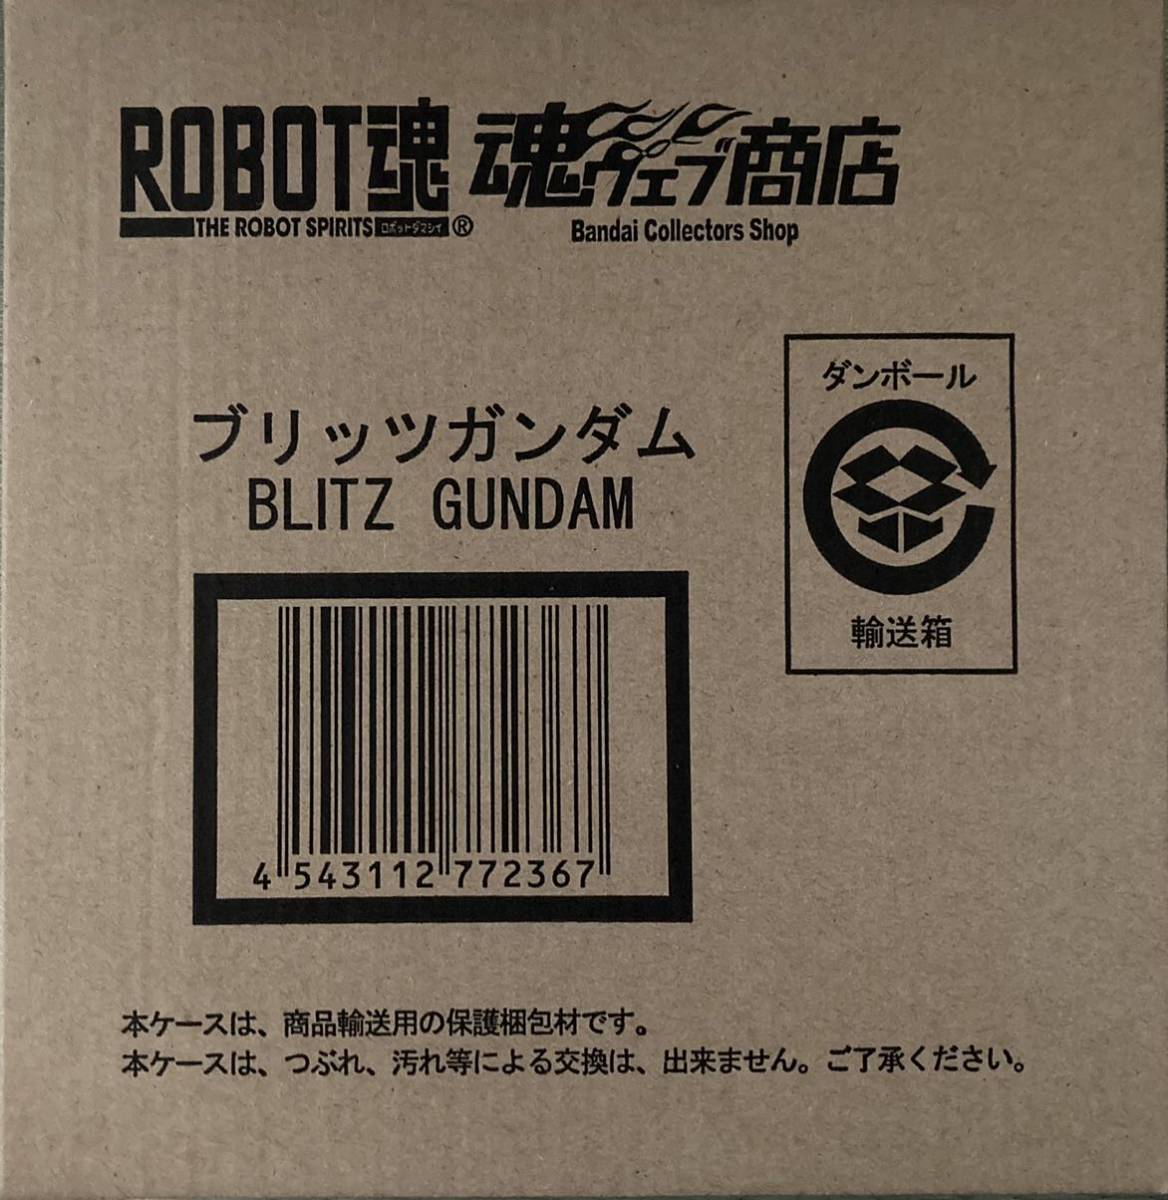 魂ウェブ商店限定 ROBOT魂 ブリッツガンダム プレミアムバンダイ 未開封、新品